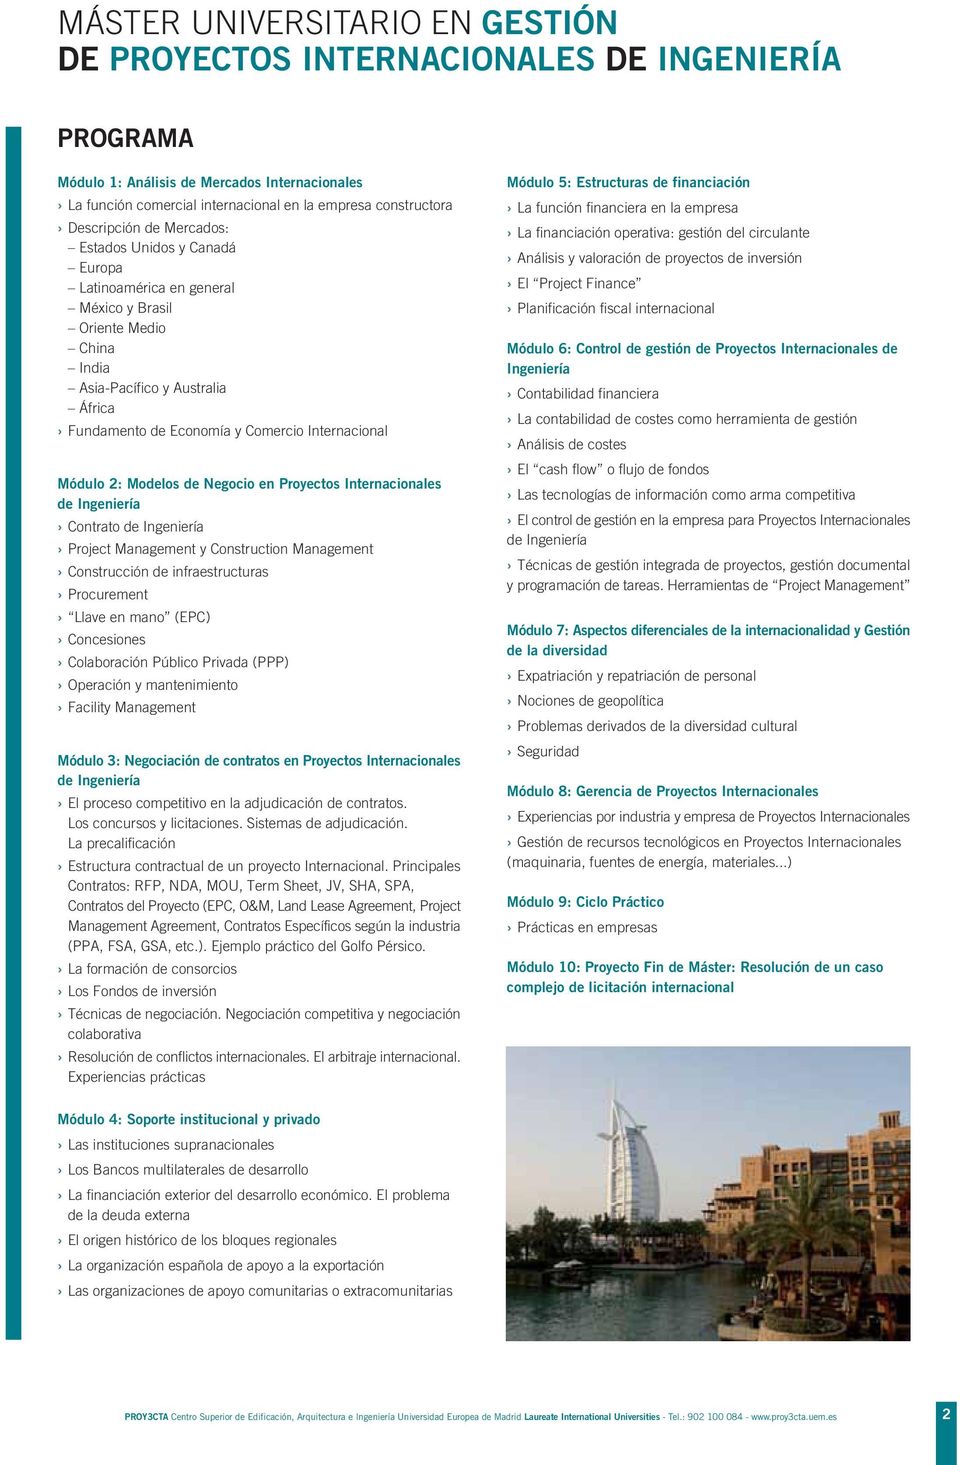 Internacional Módulo 2: Modelos de Negocio en Proyectos Internacionales de Ingeniería Contrato de Ingeniería Project Management y Construction Management Construcción de infraestructuras Procurement